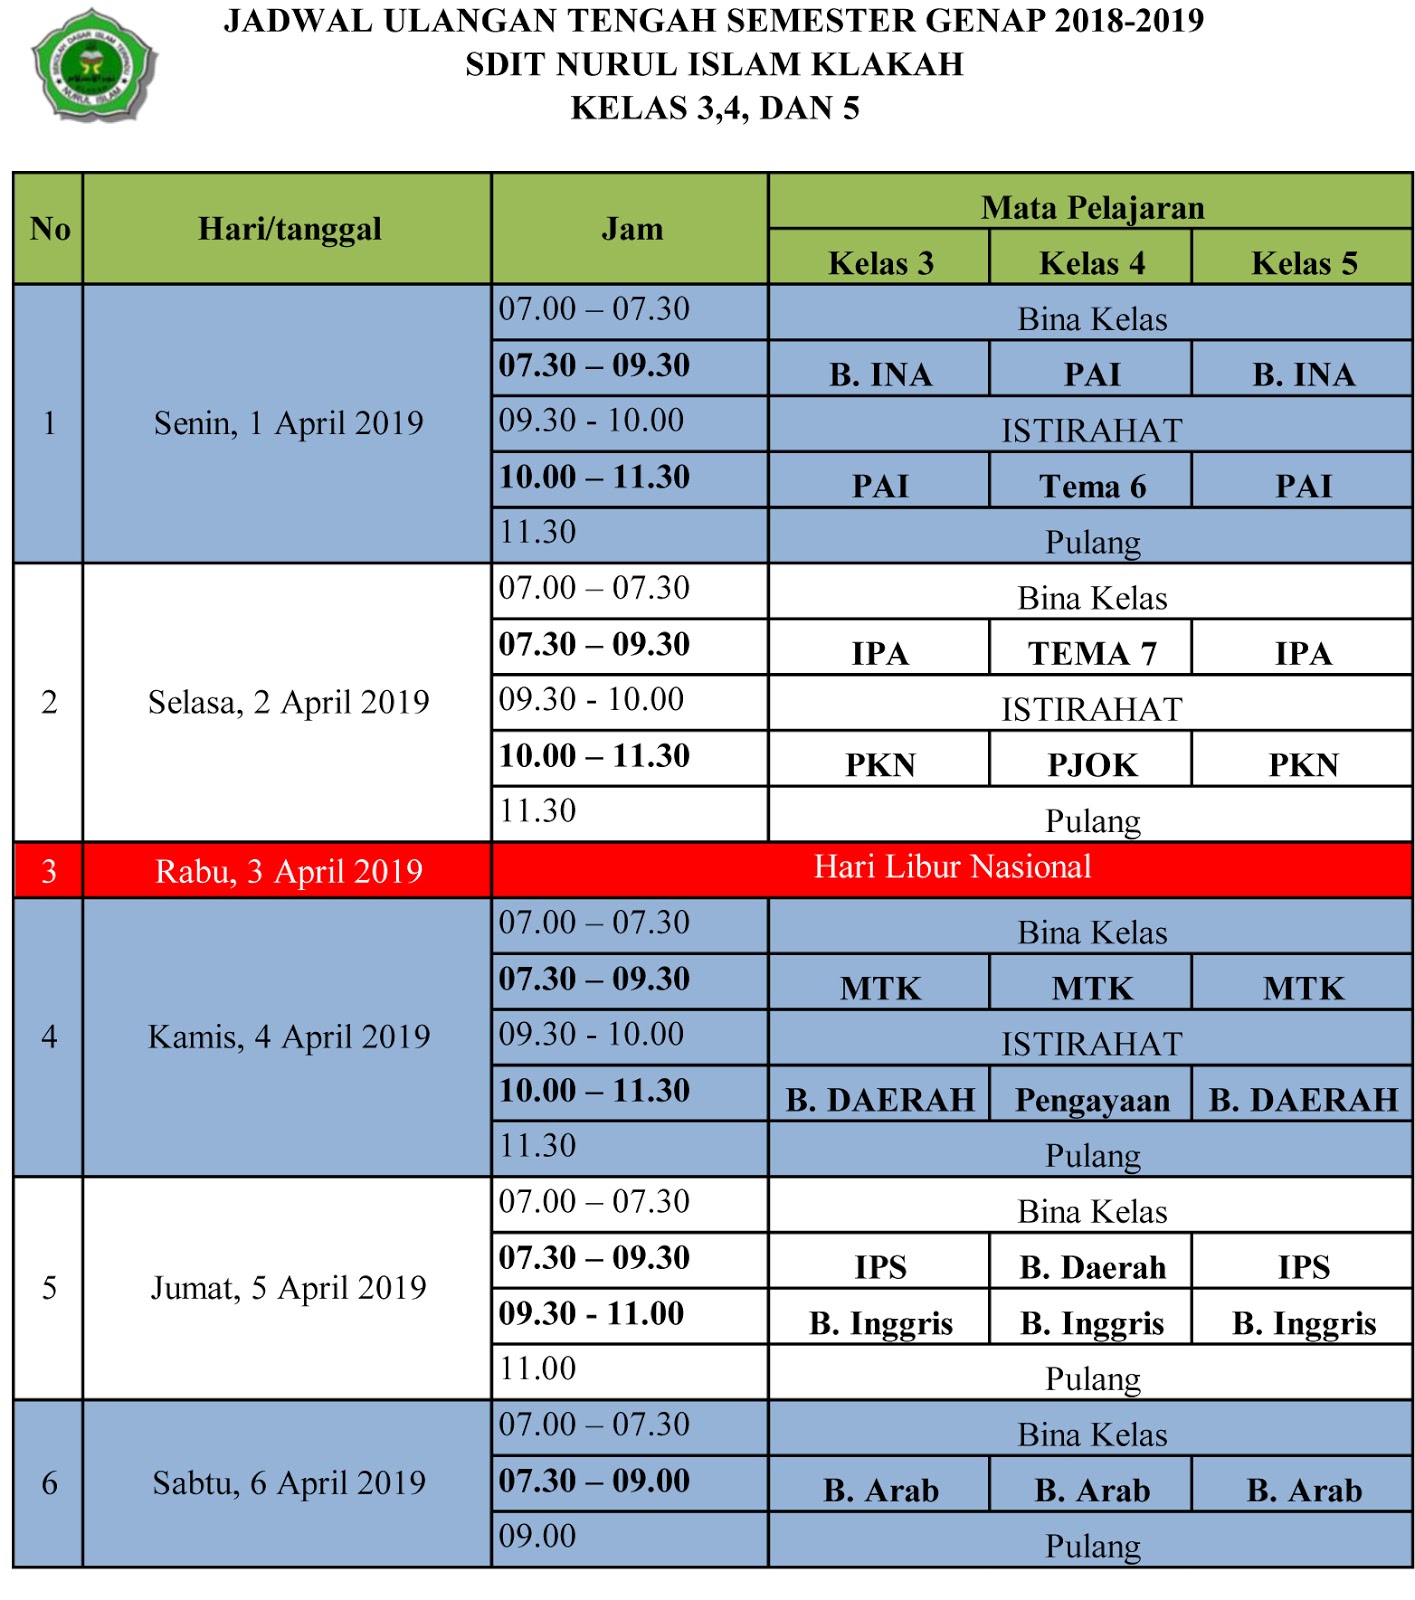 Berikut adalah jadwal UTS Semester genap 2018 2019 SDIT Nurul Islam Klakah